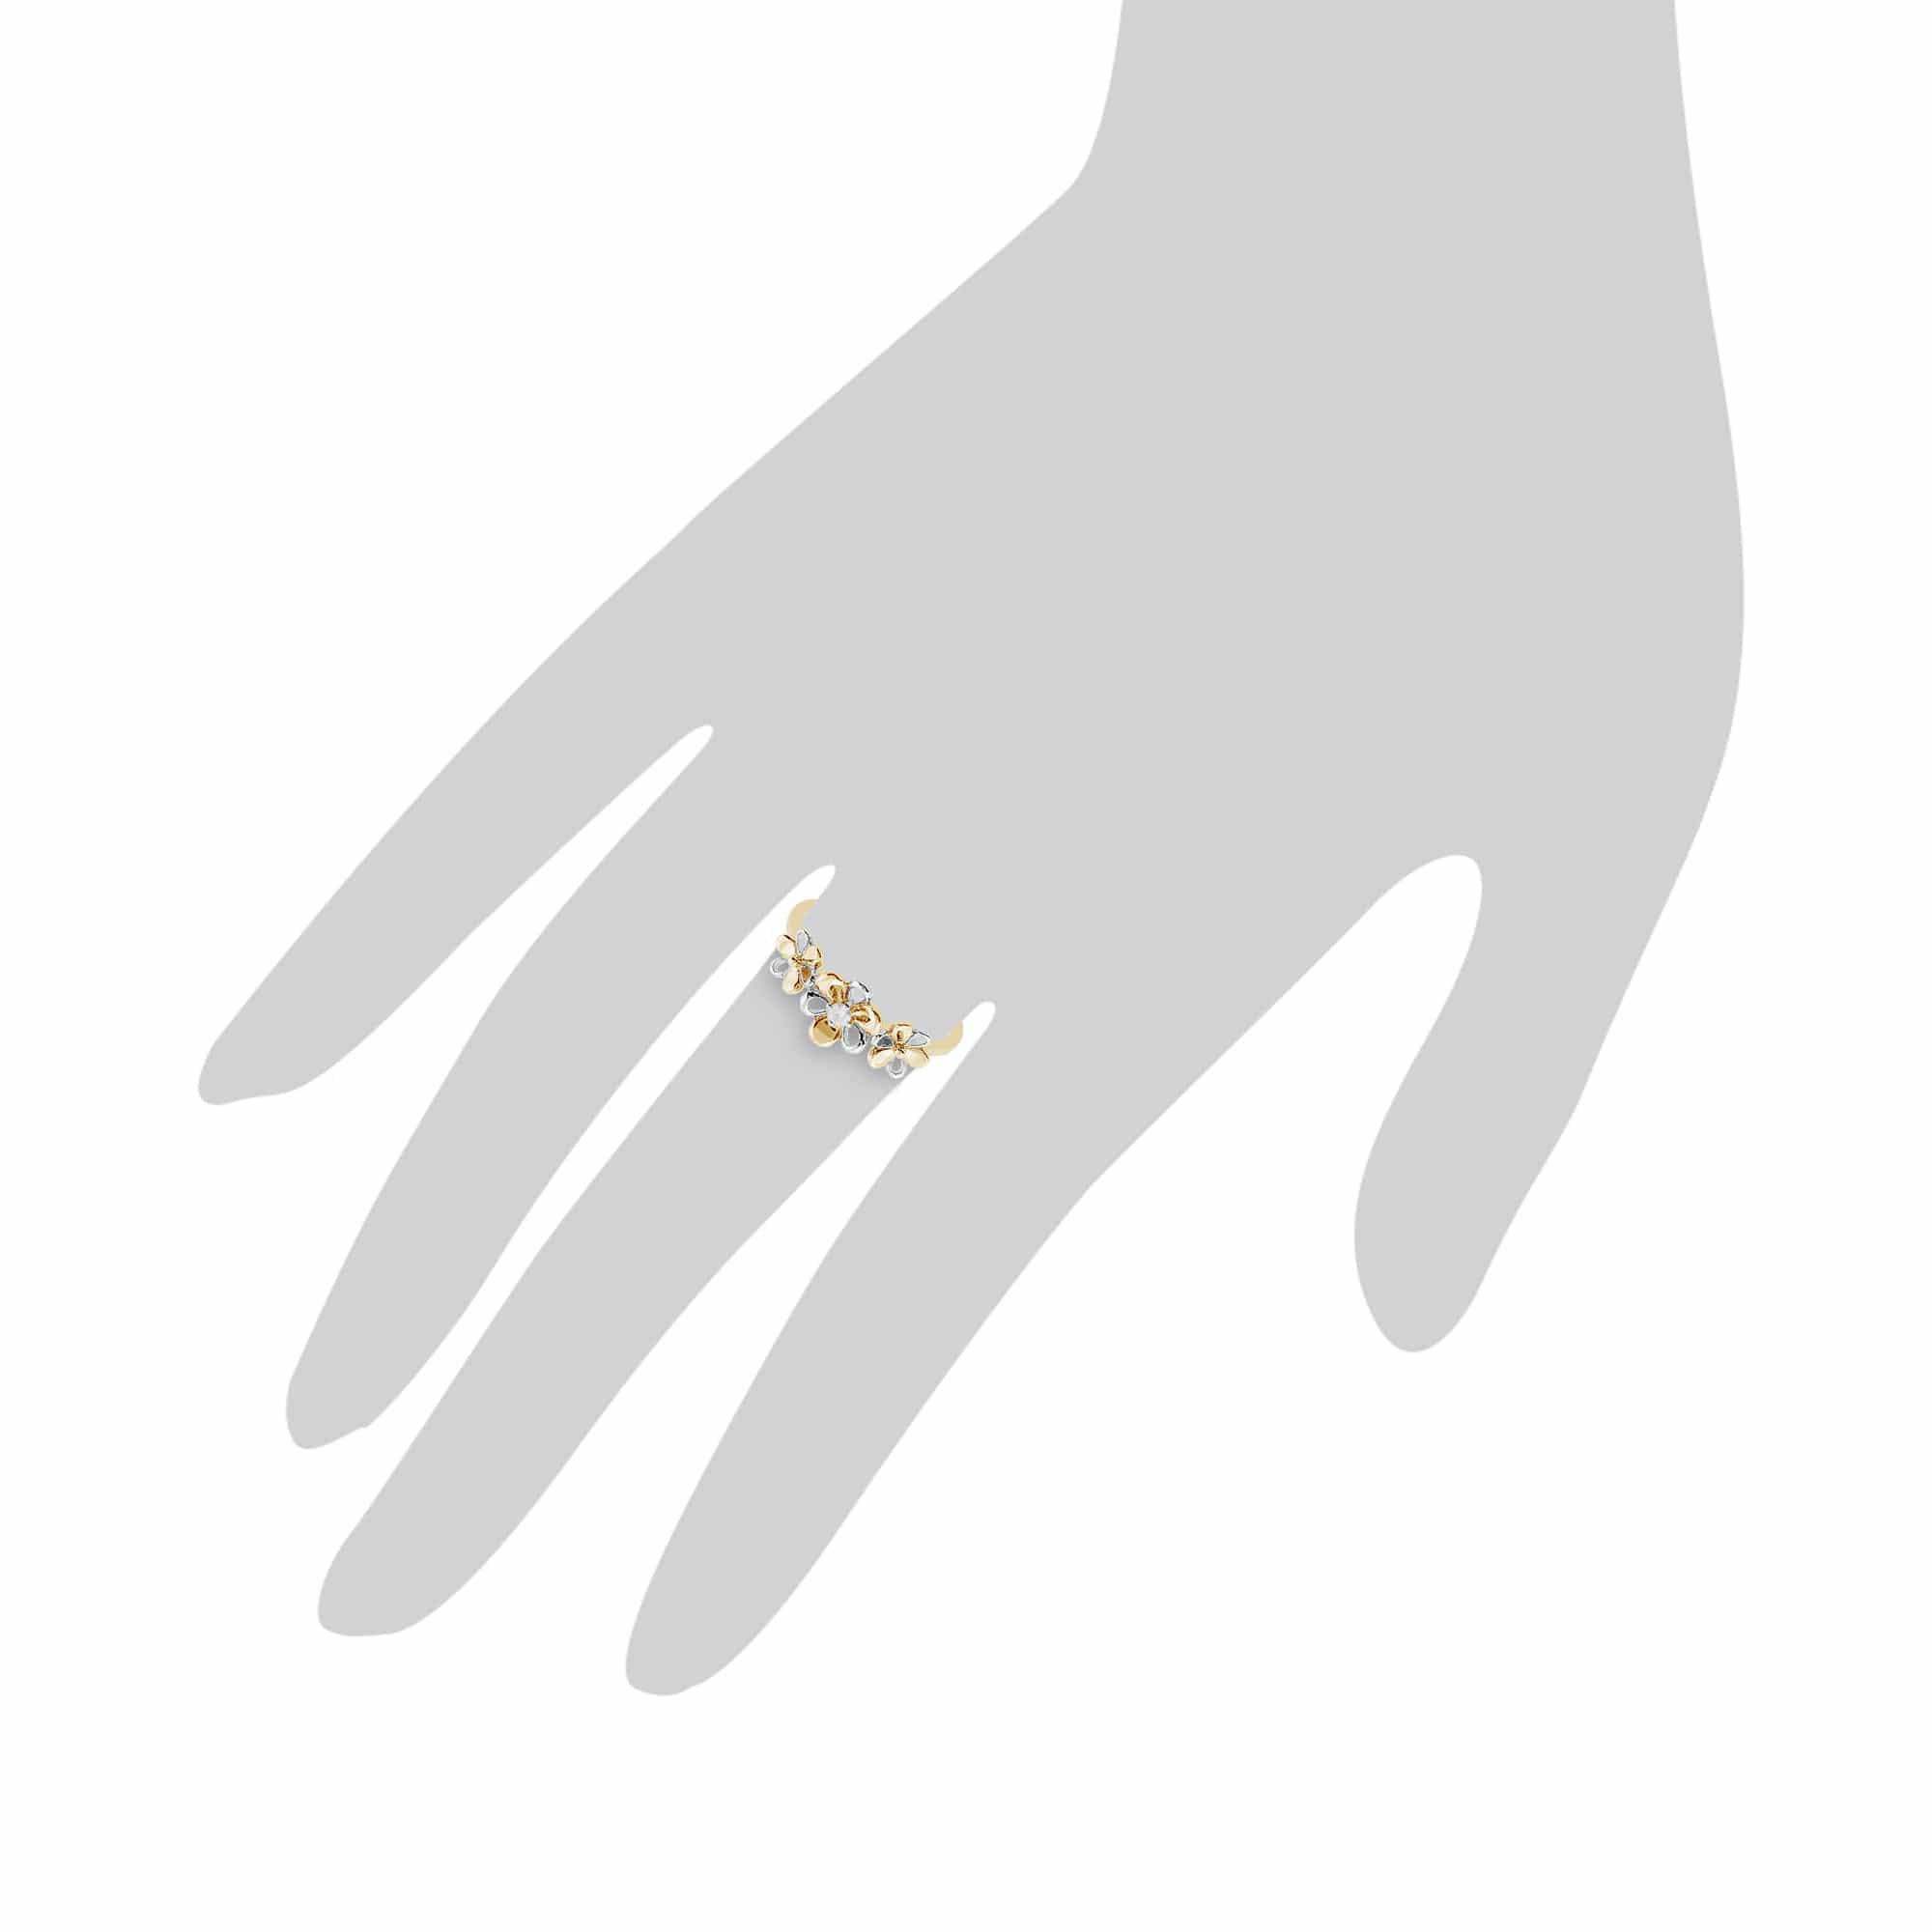 191R0885019 Gemondo 9ct Yellow Gold 0.03ct Diamond Three Flower Ring 3